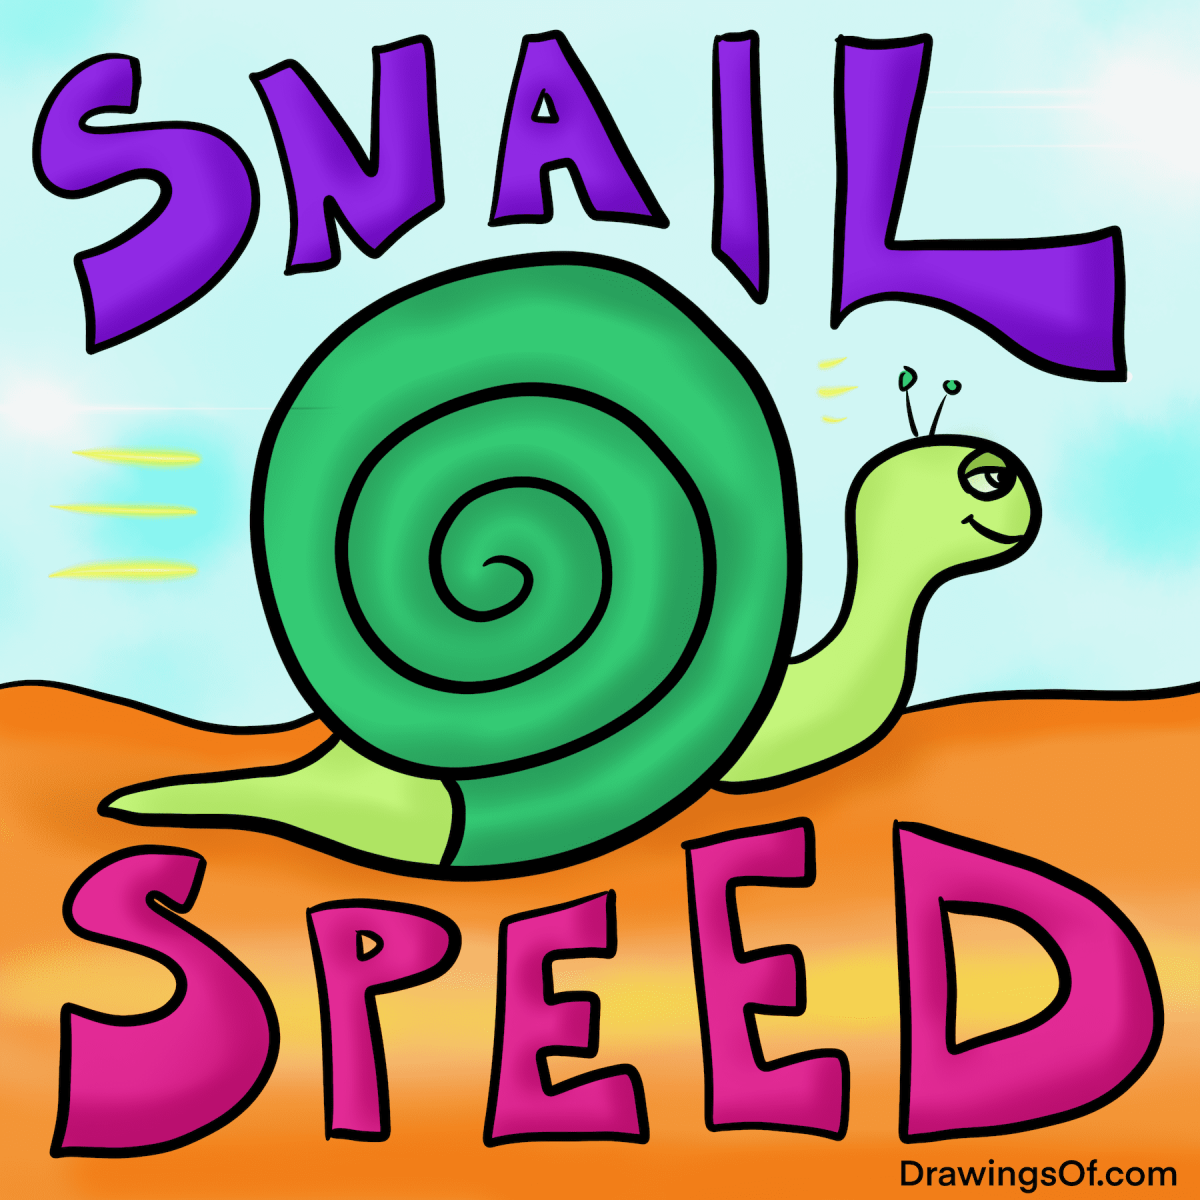 Cute cartoon snail drawing